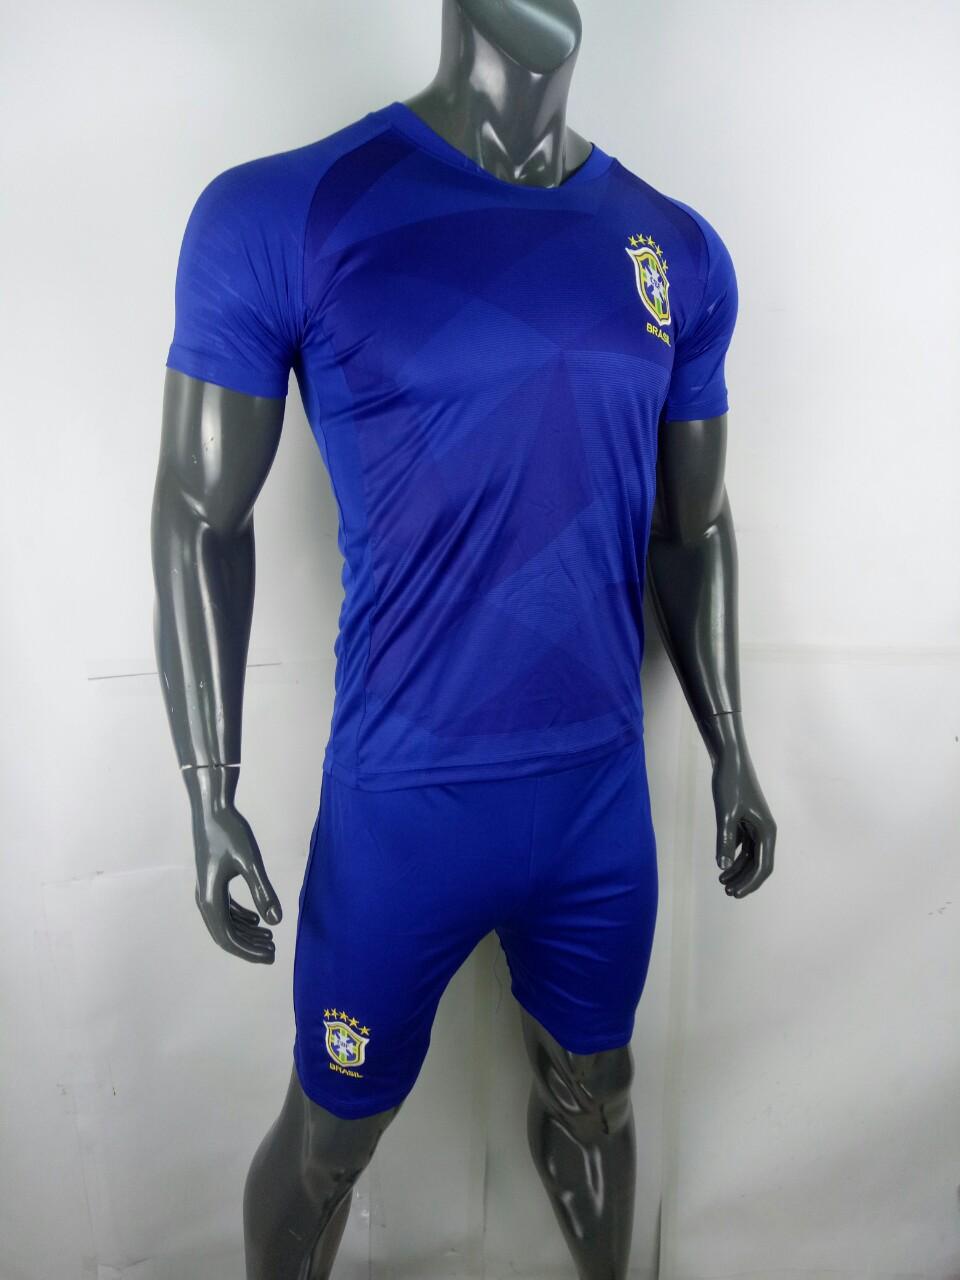 Bộ quần áo đá banh - đá bóng đội tuyển Brazil - Braxin xanh Wolrd cup 2018 mẫu chính thức